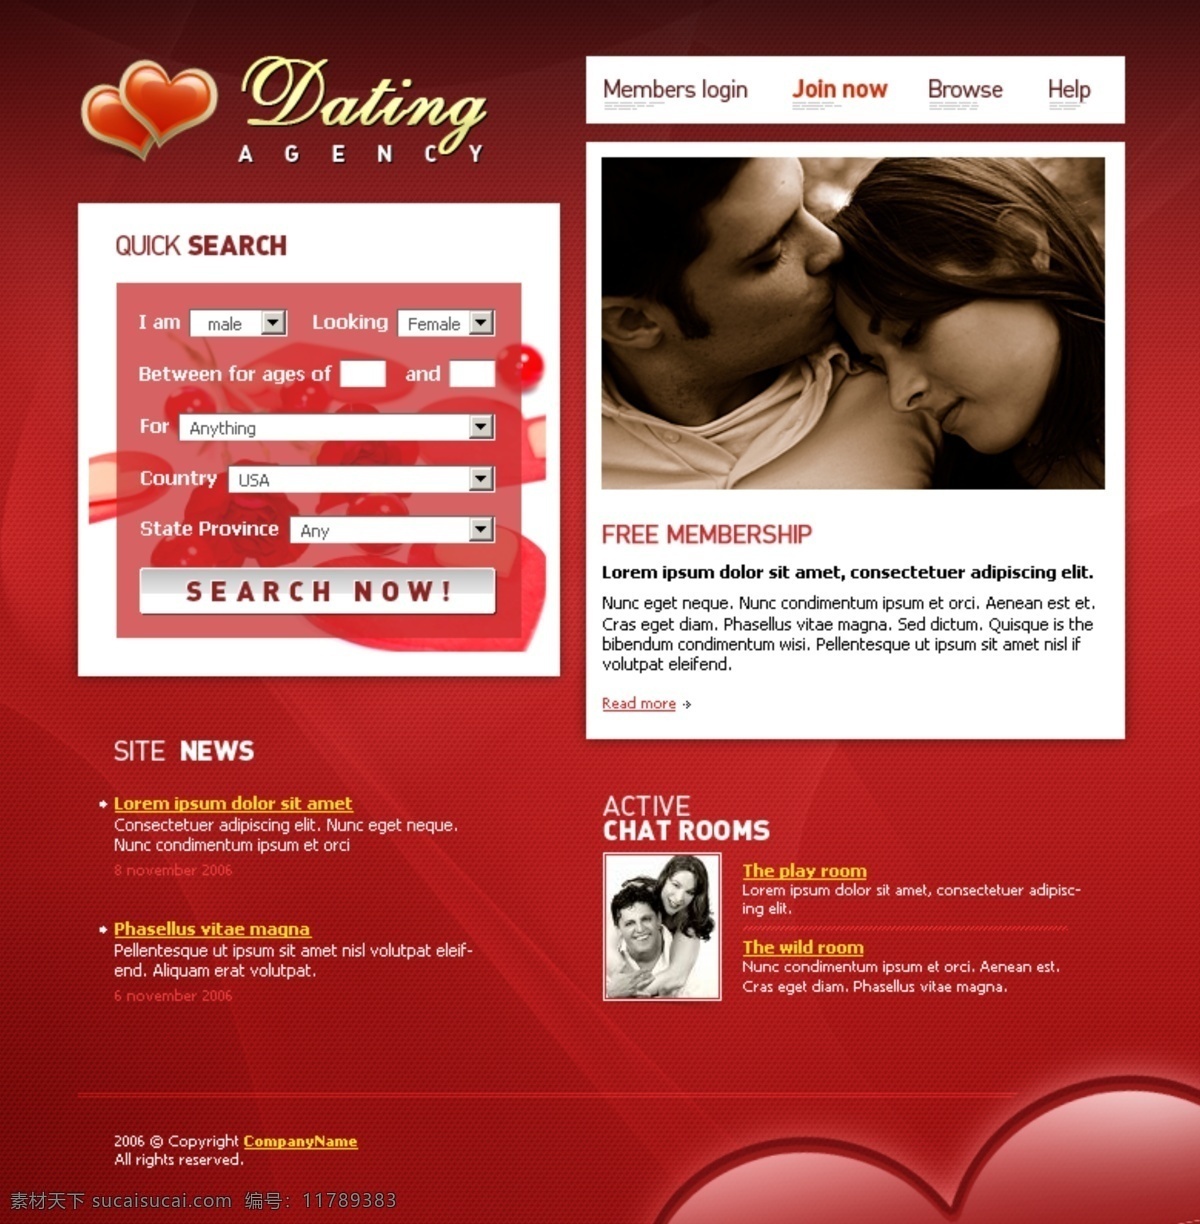 红心 婚介 中心 网页模板 煨 网页素材 网页代码